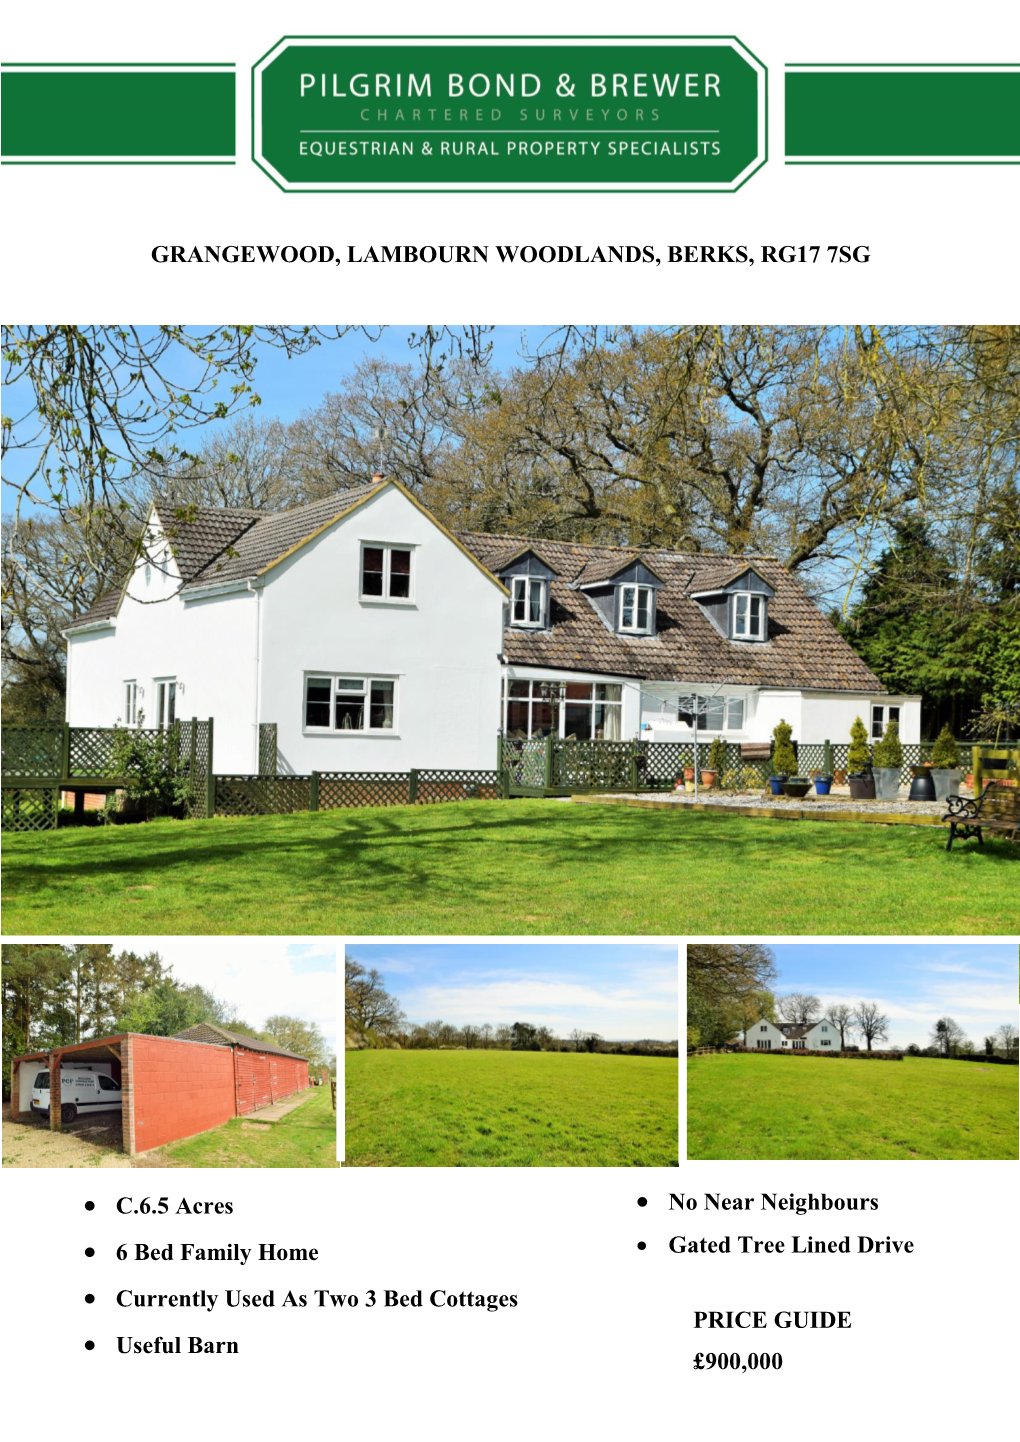 Grangewood, Lambourn Woodlands, Berks, Rg17 7Sg